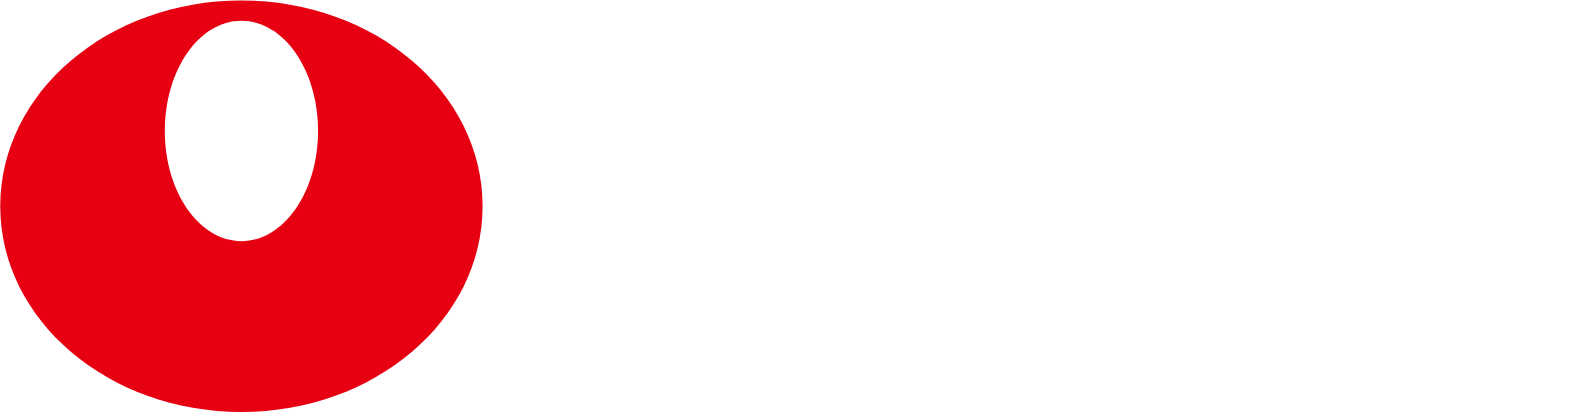 Nongshim logo grand pour les fonds sombres (PNG transparent)